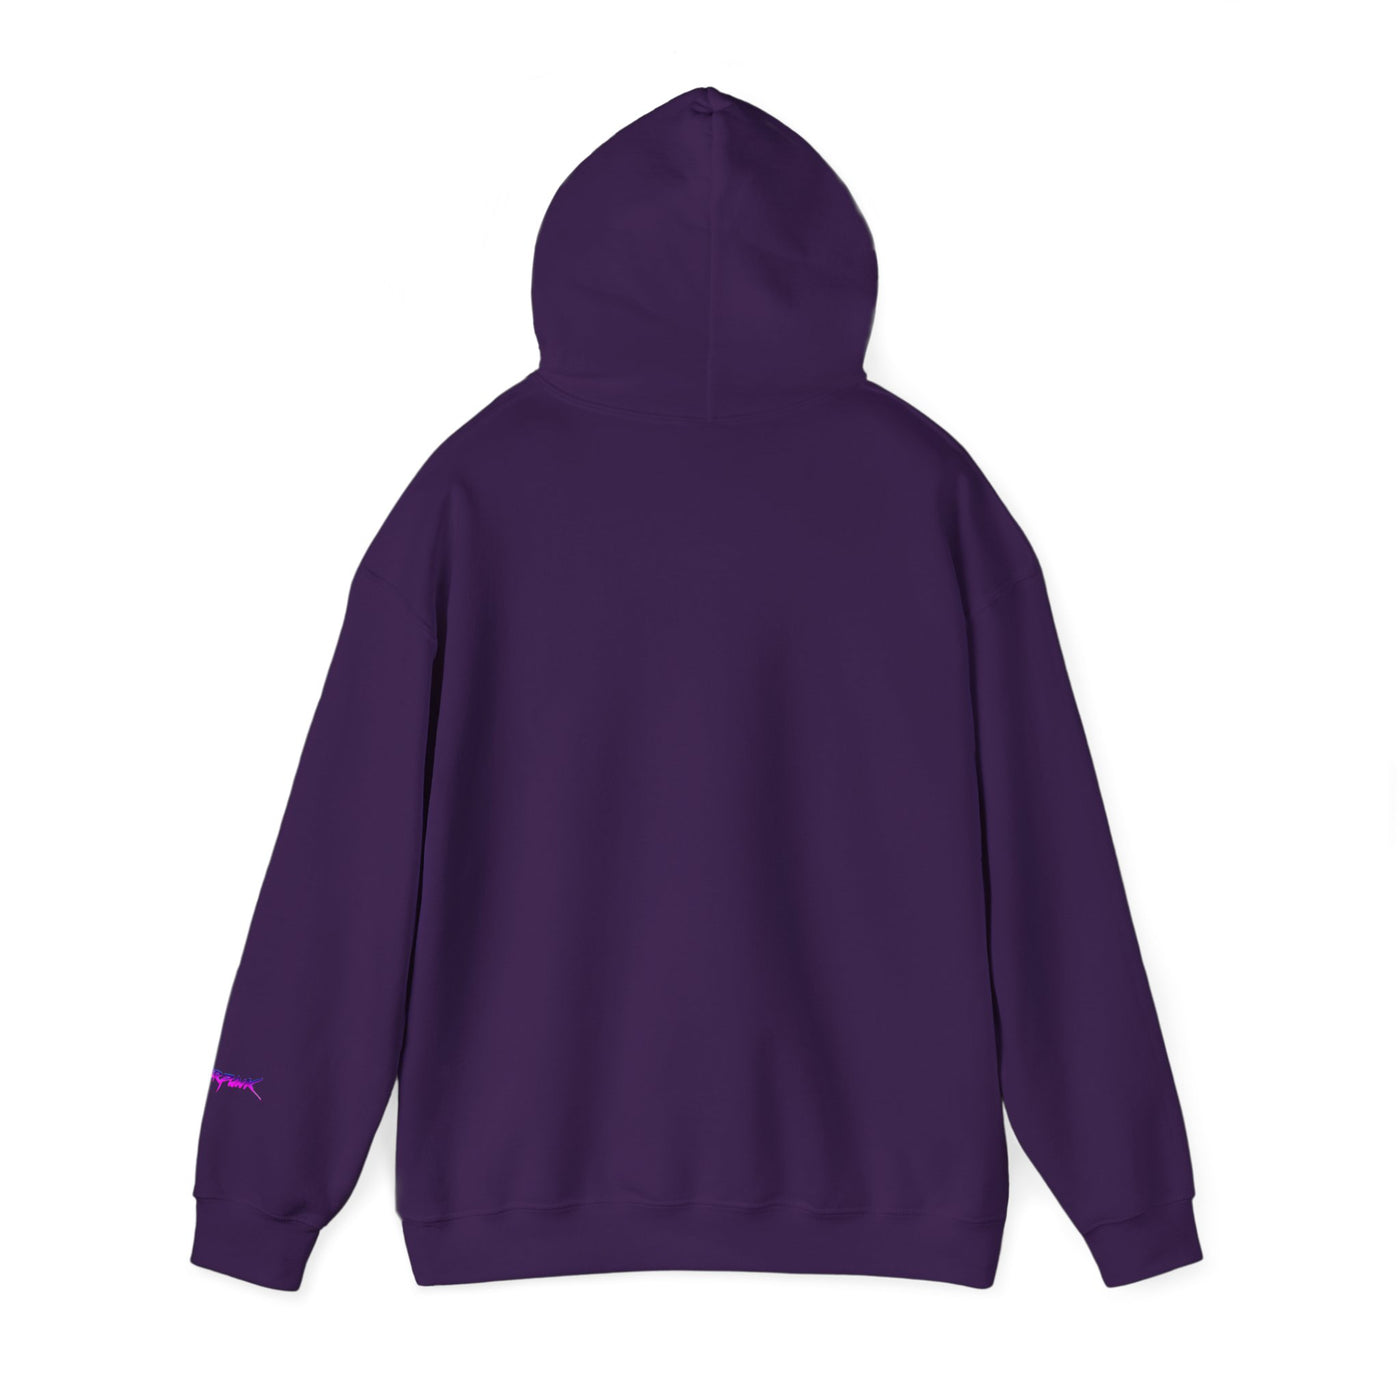 Lucy Heavy Blend™ Hooded Sweatshirt